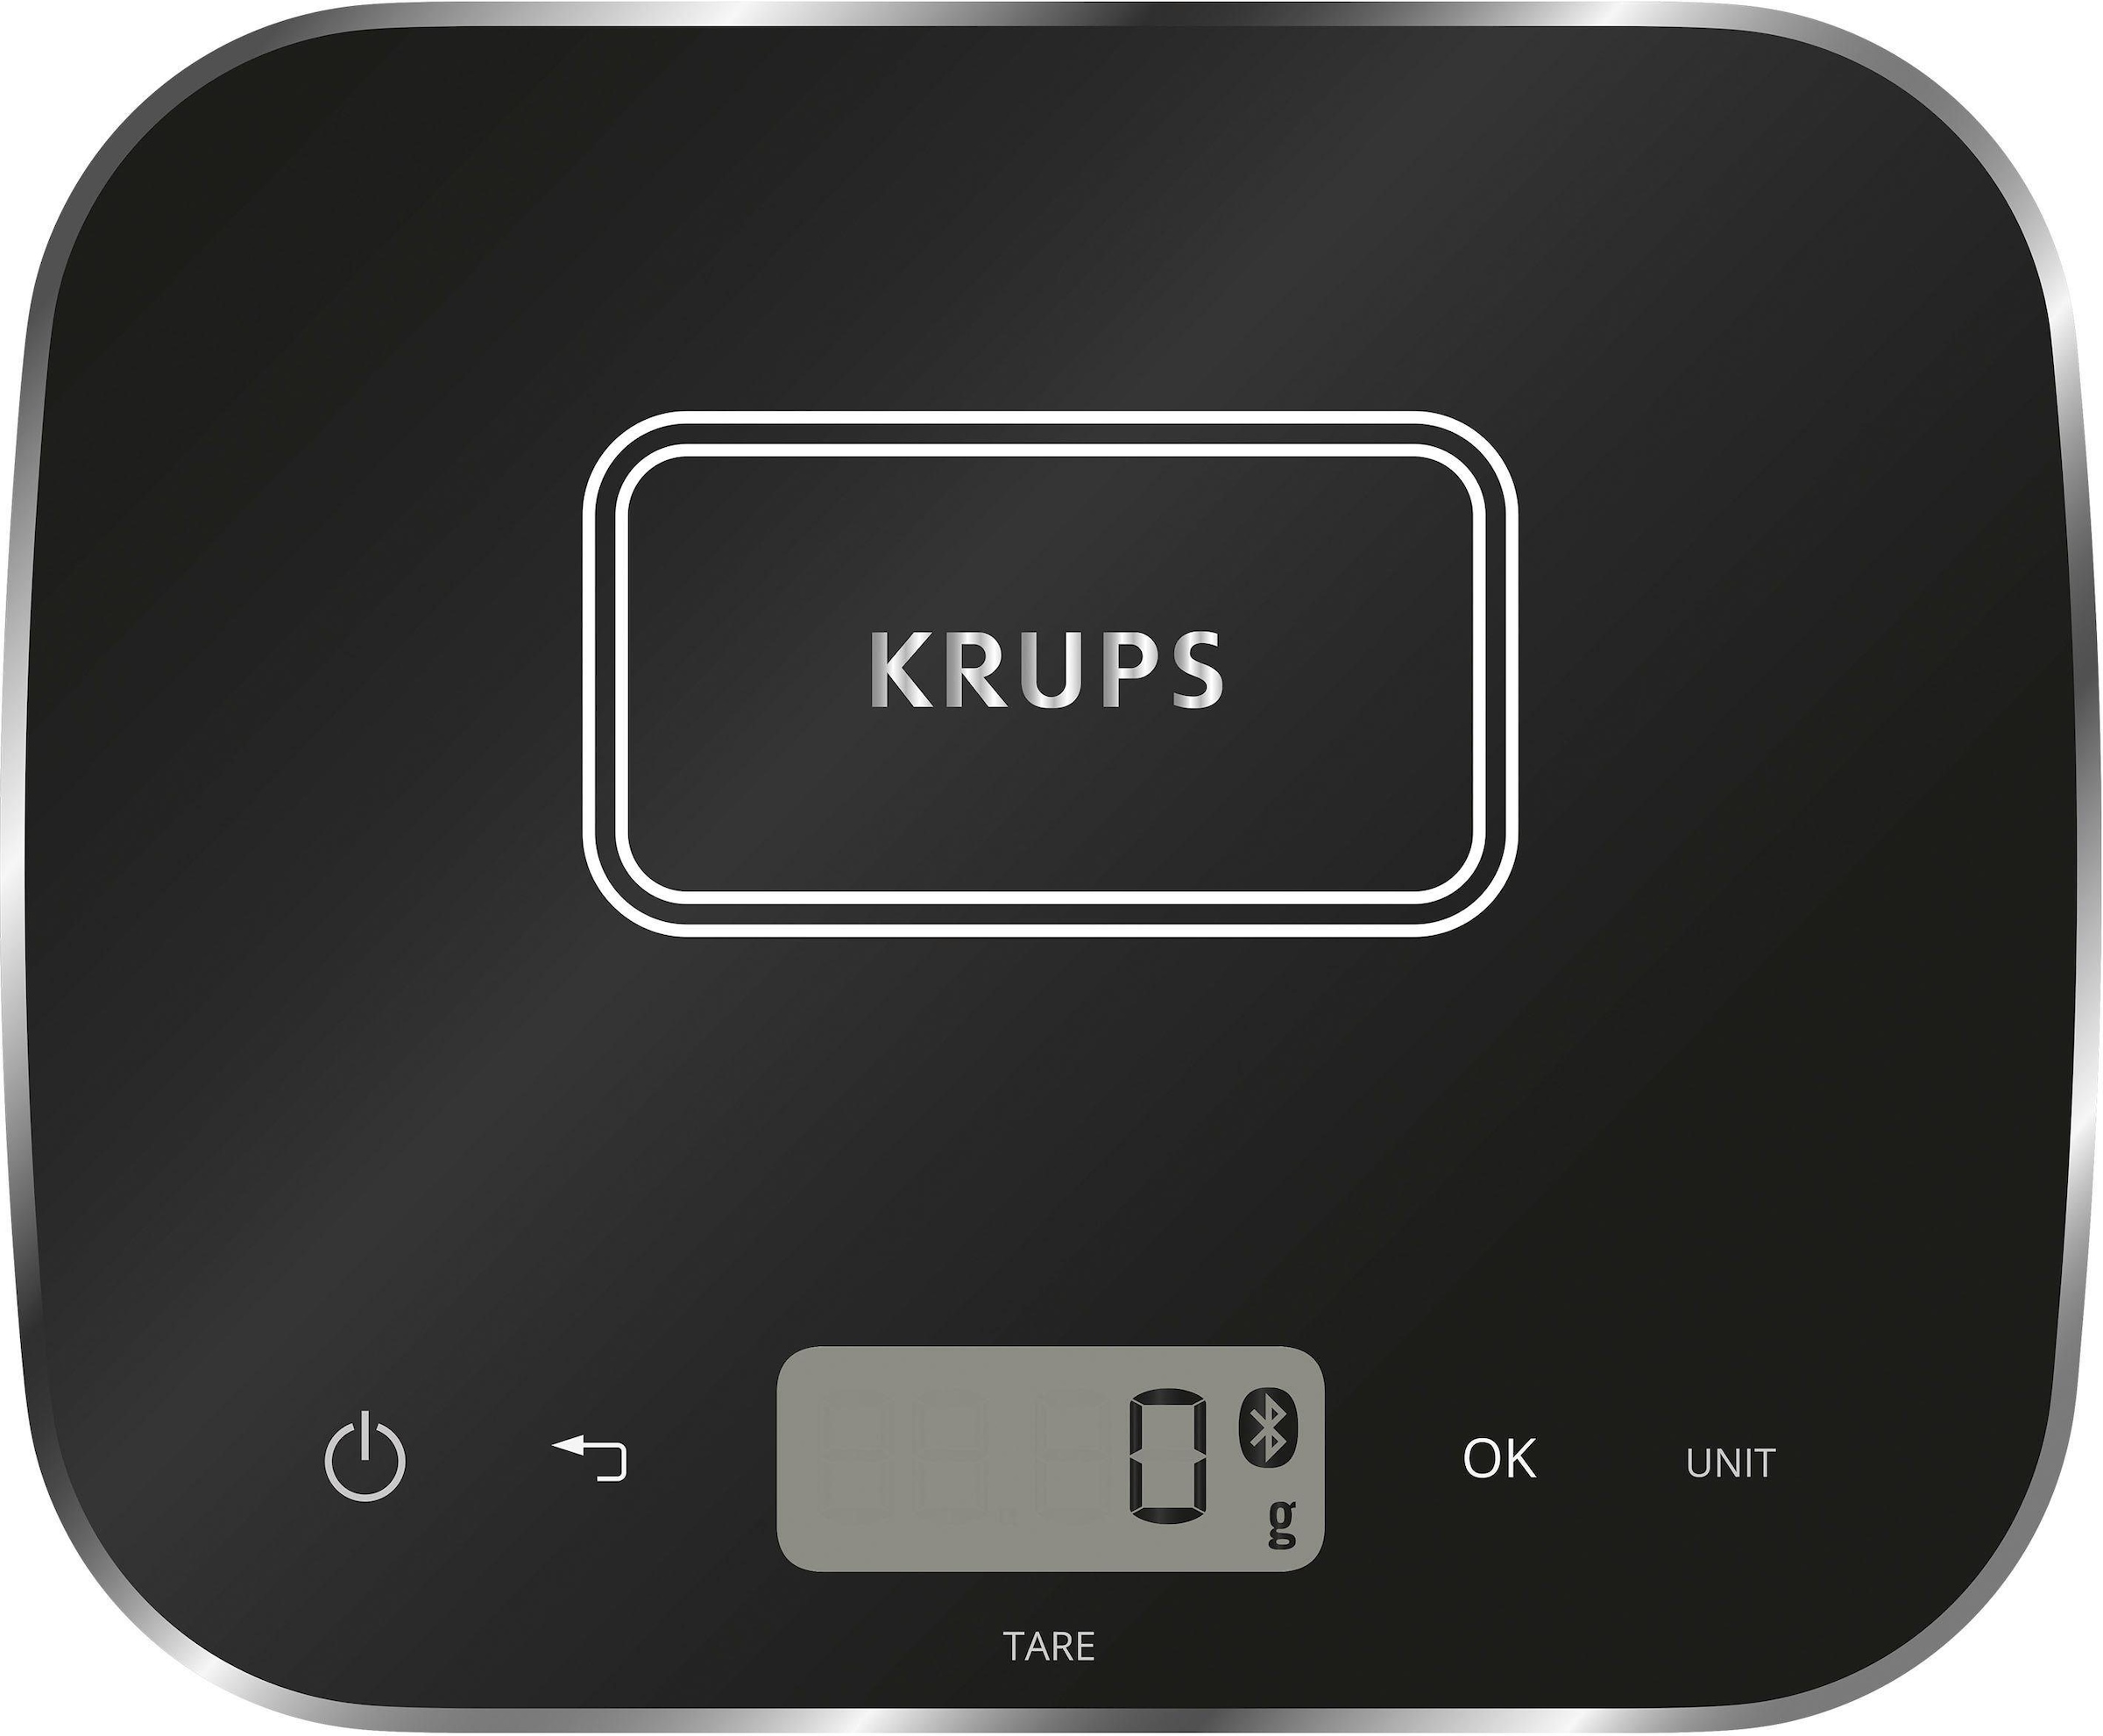 Krups Multikocher »CZ8568 Cook4Me+ Grameez«, vernetzte Waage, 300 Rezepte, 6 Programme, kompatibel mit Cook4Me-App